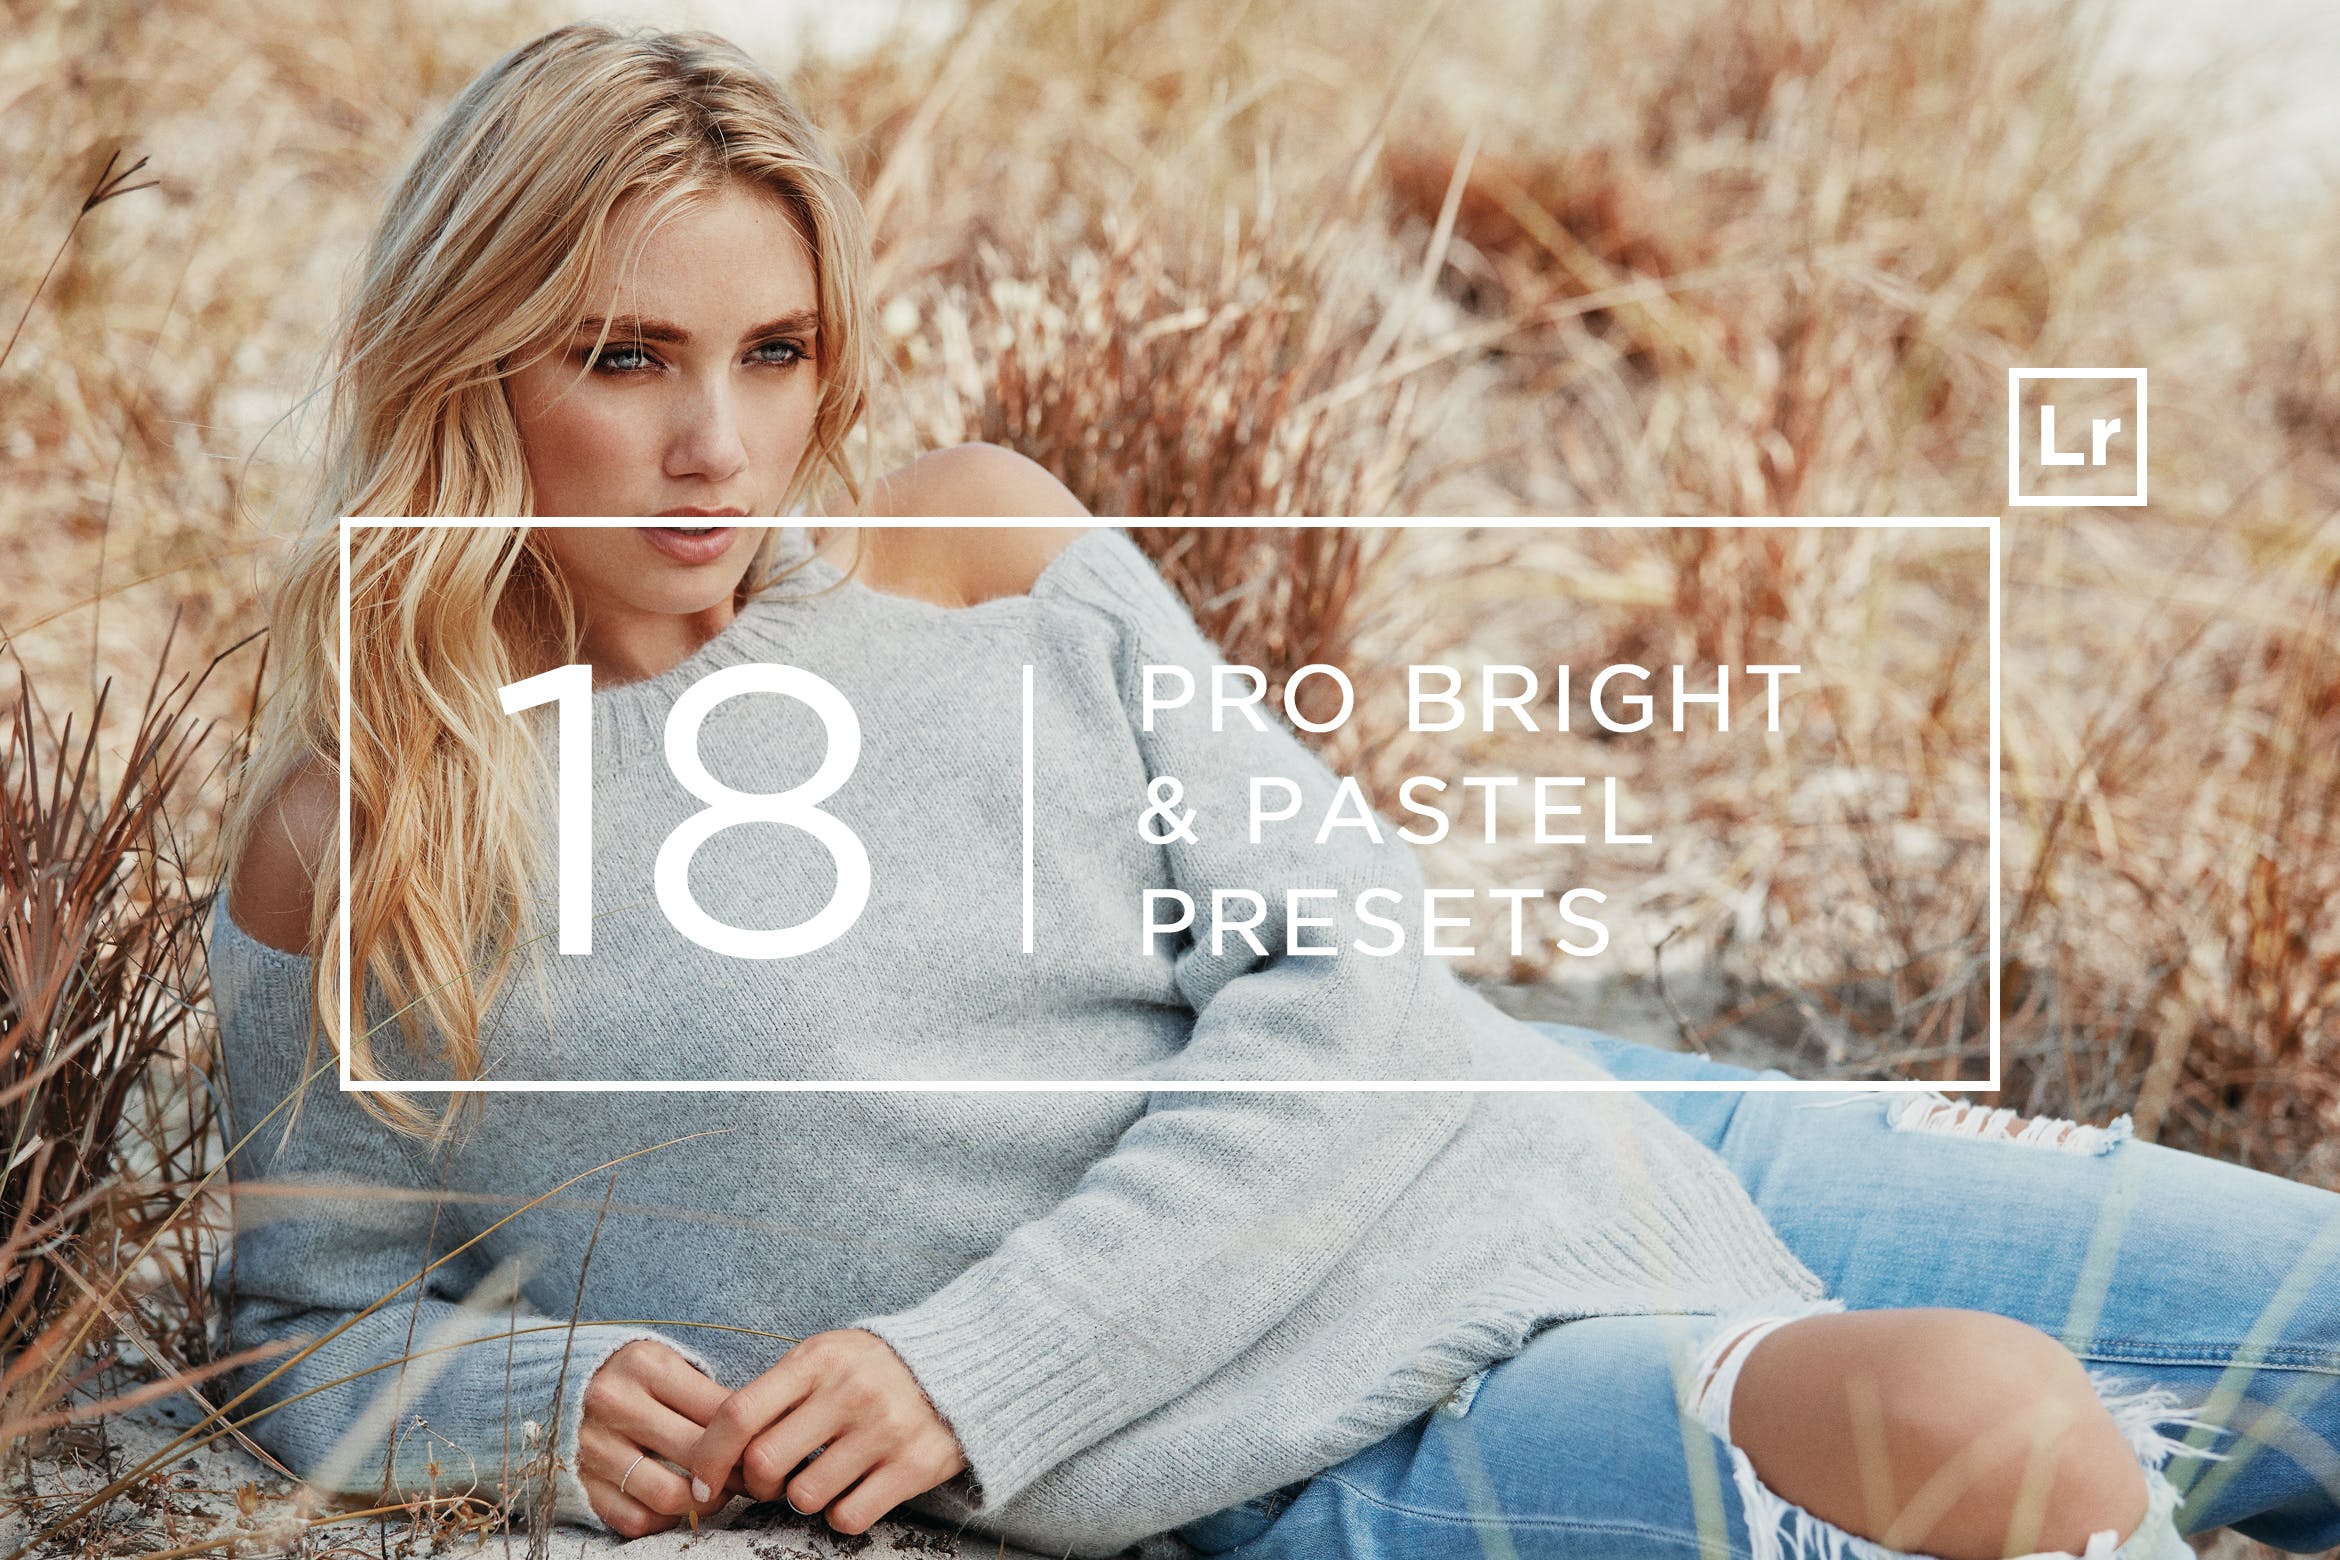 18个专业摄影师调色滤镜定制非凡图库精选LR预设 18 Pro Bright & Pastel Lightroom Presets插图